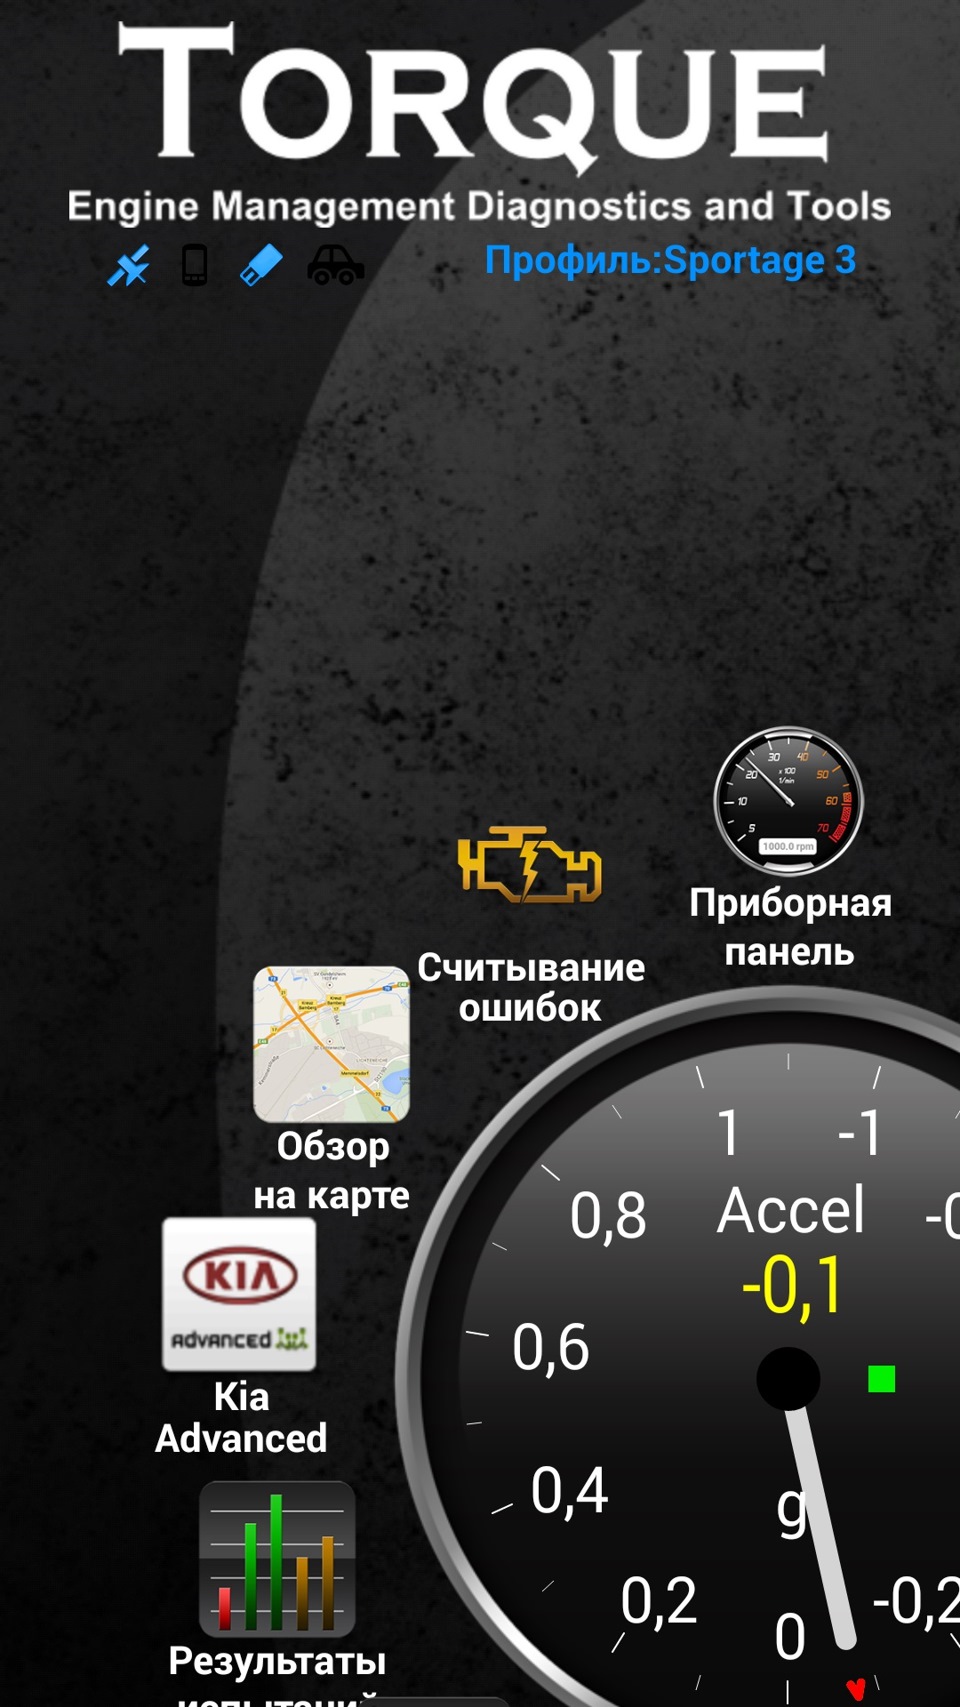 Скачать программы для сканирования ошибок и декодирования кодов ошибок obd 2 на русском языке для Android. программа, которую я использую